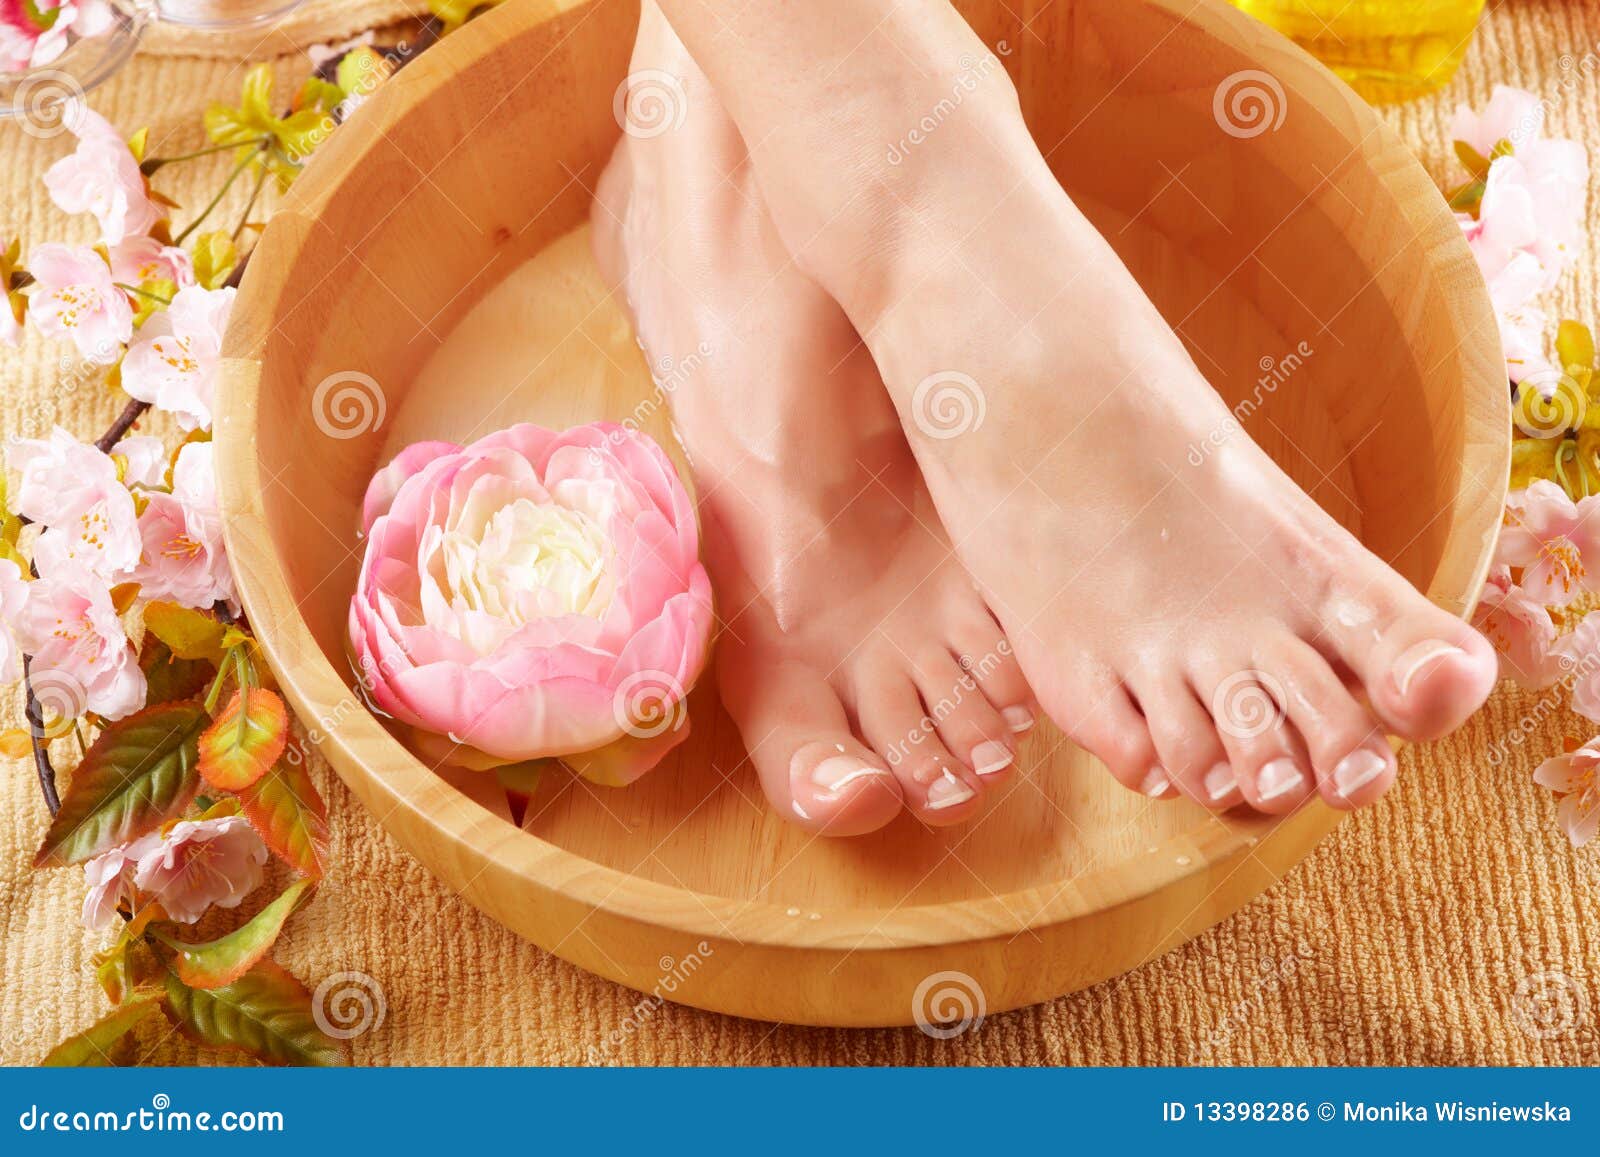 Beautiful Female Feet Royalty Free Stock Image - Image: 13398286